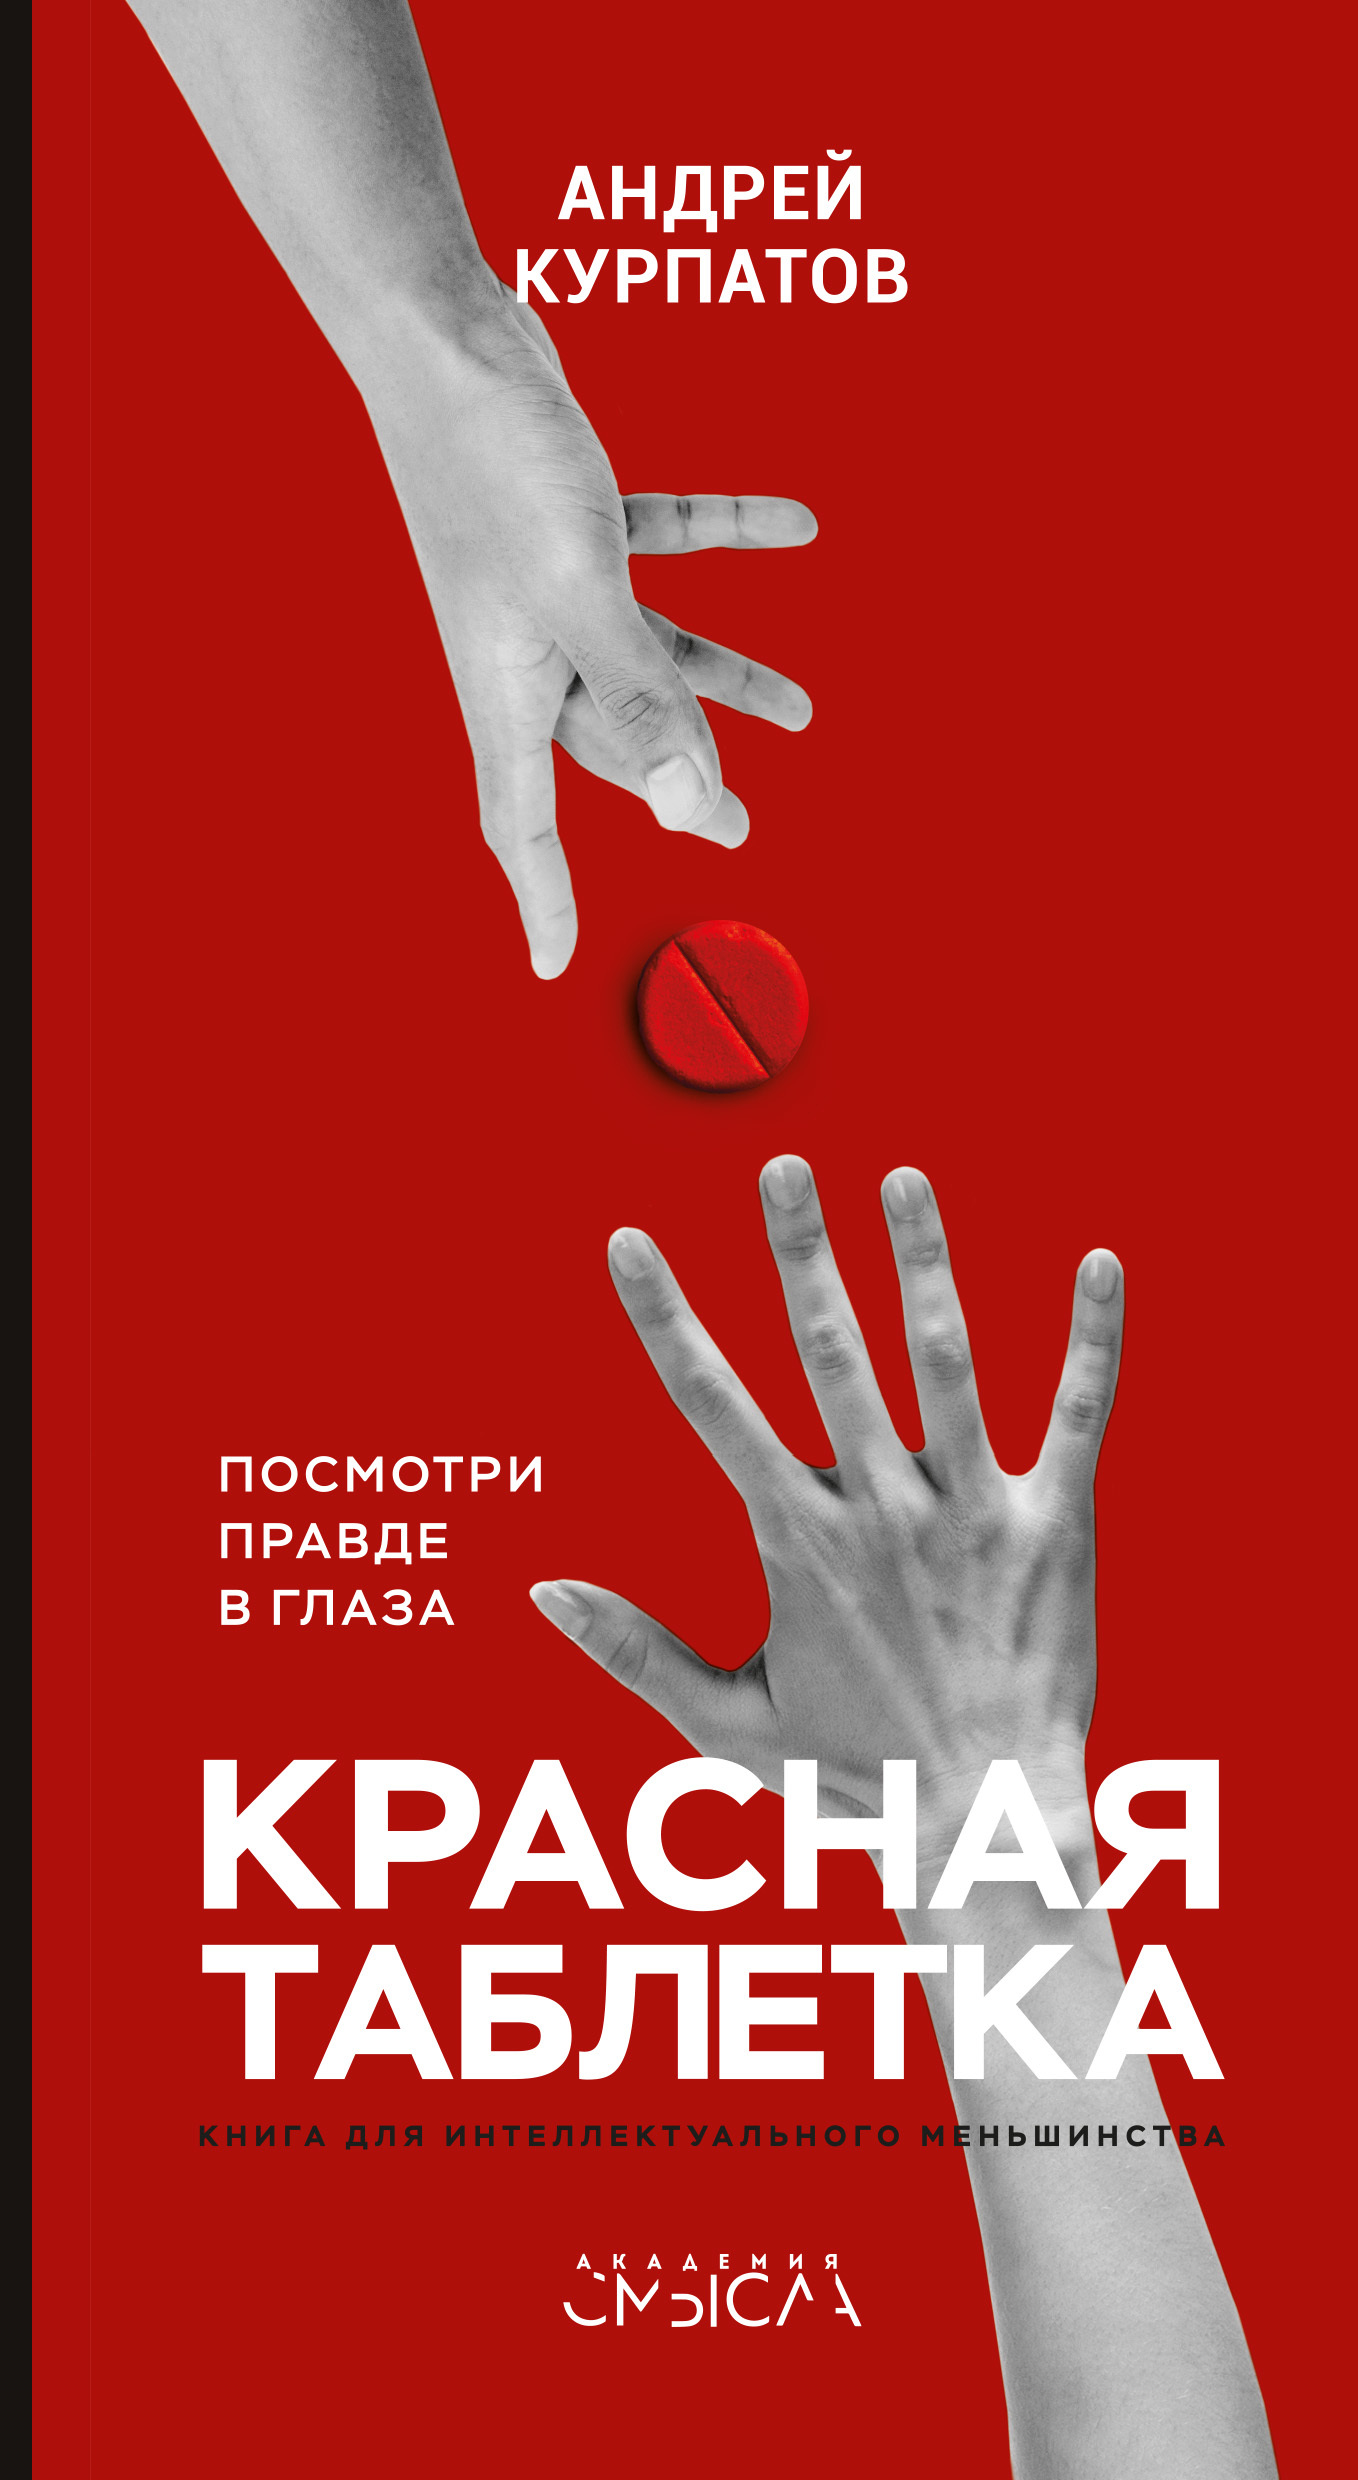 Андрей Курпатов «Красная таблетка»